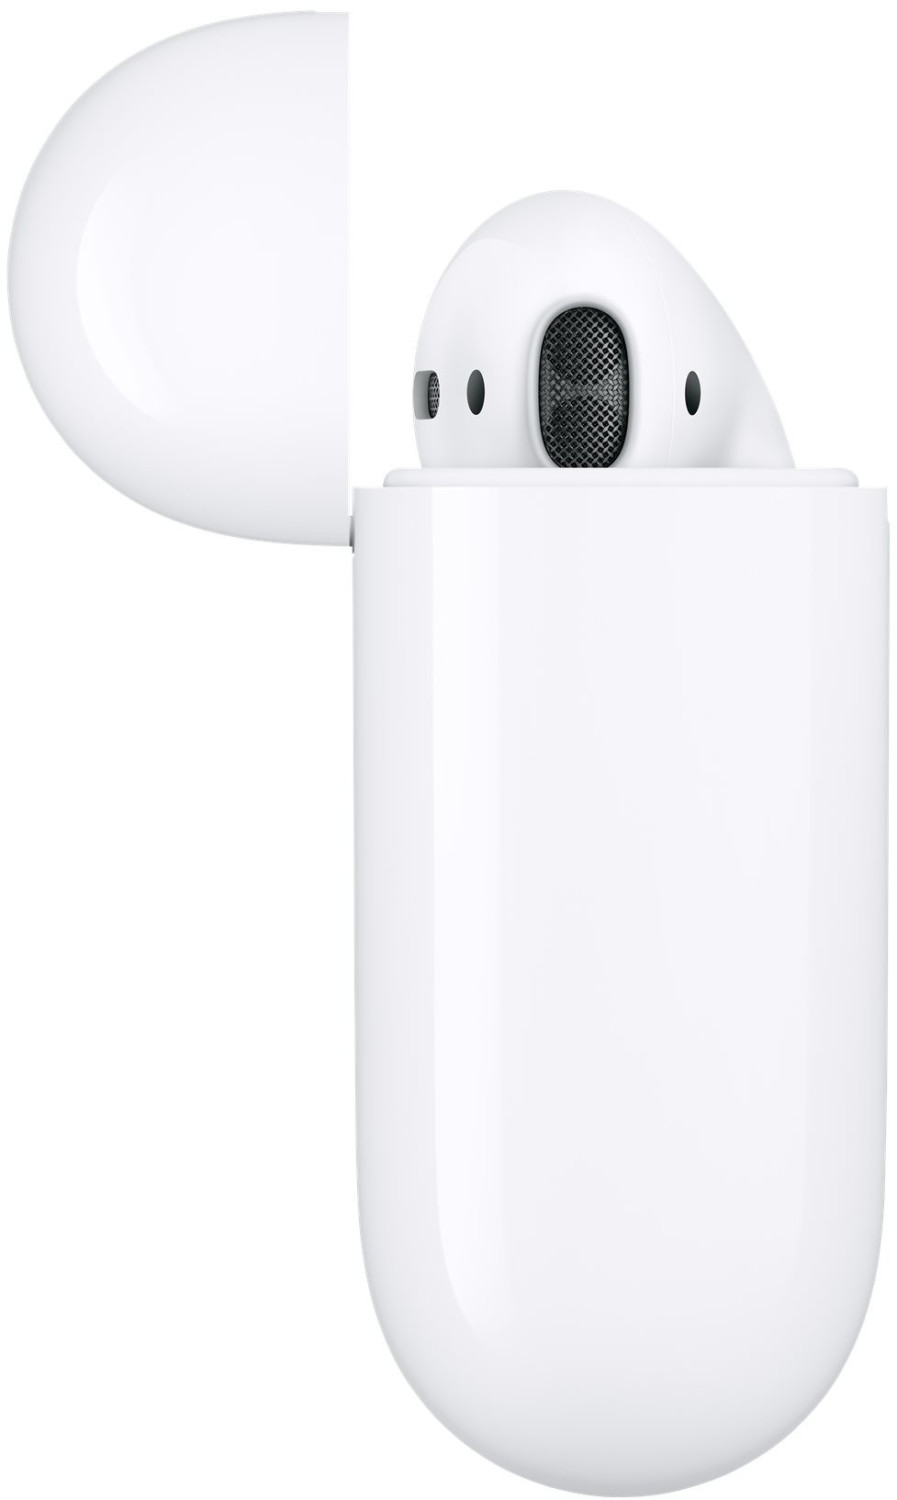 Apple AirPods 2 avec boîtier de charge